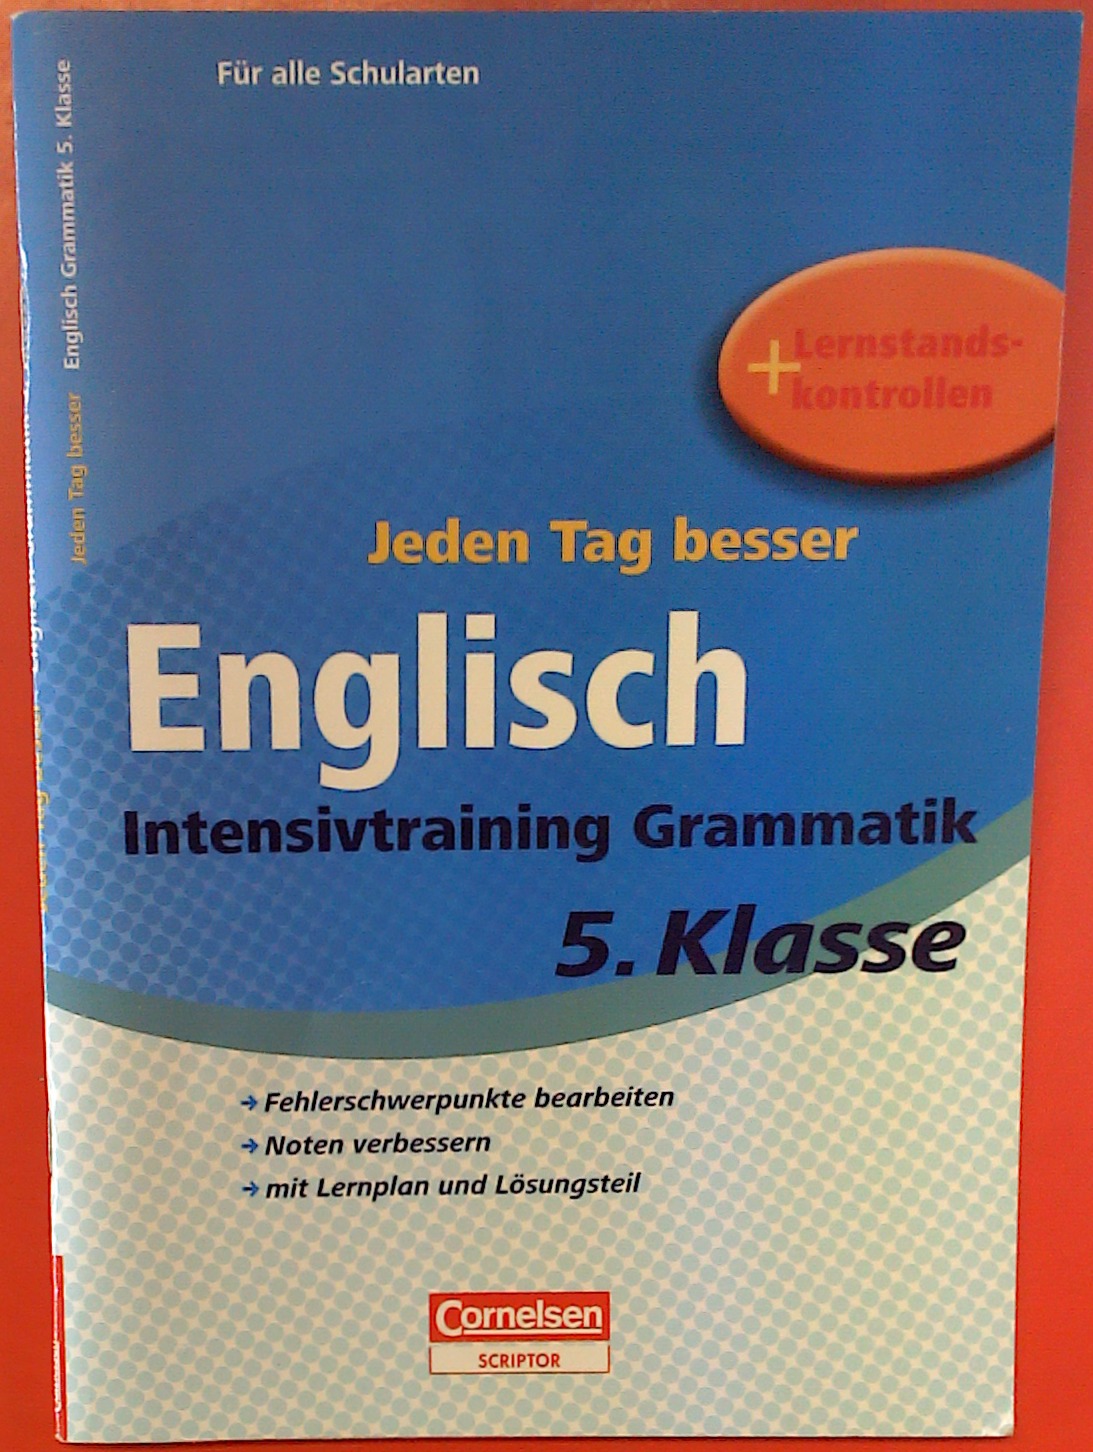 Jeden Tag besser. Englisch. Intensivtraining Grammatik, 5. Klasse, Für alle Schularten + Lernstandskontrolle, 1. Auflage - Thomas Wegner